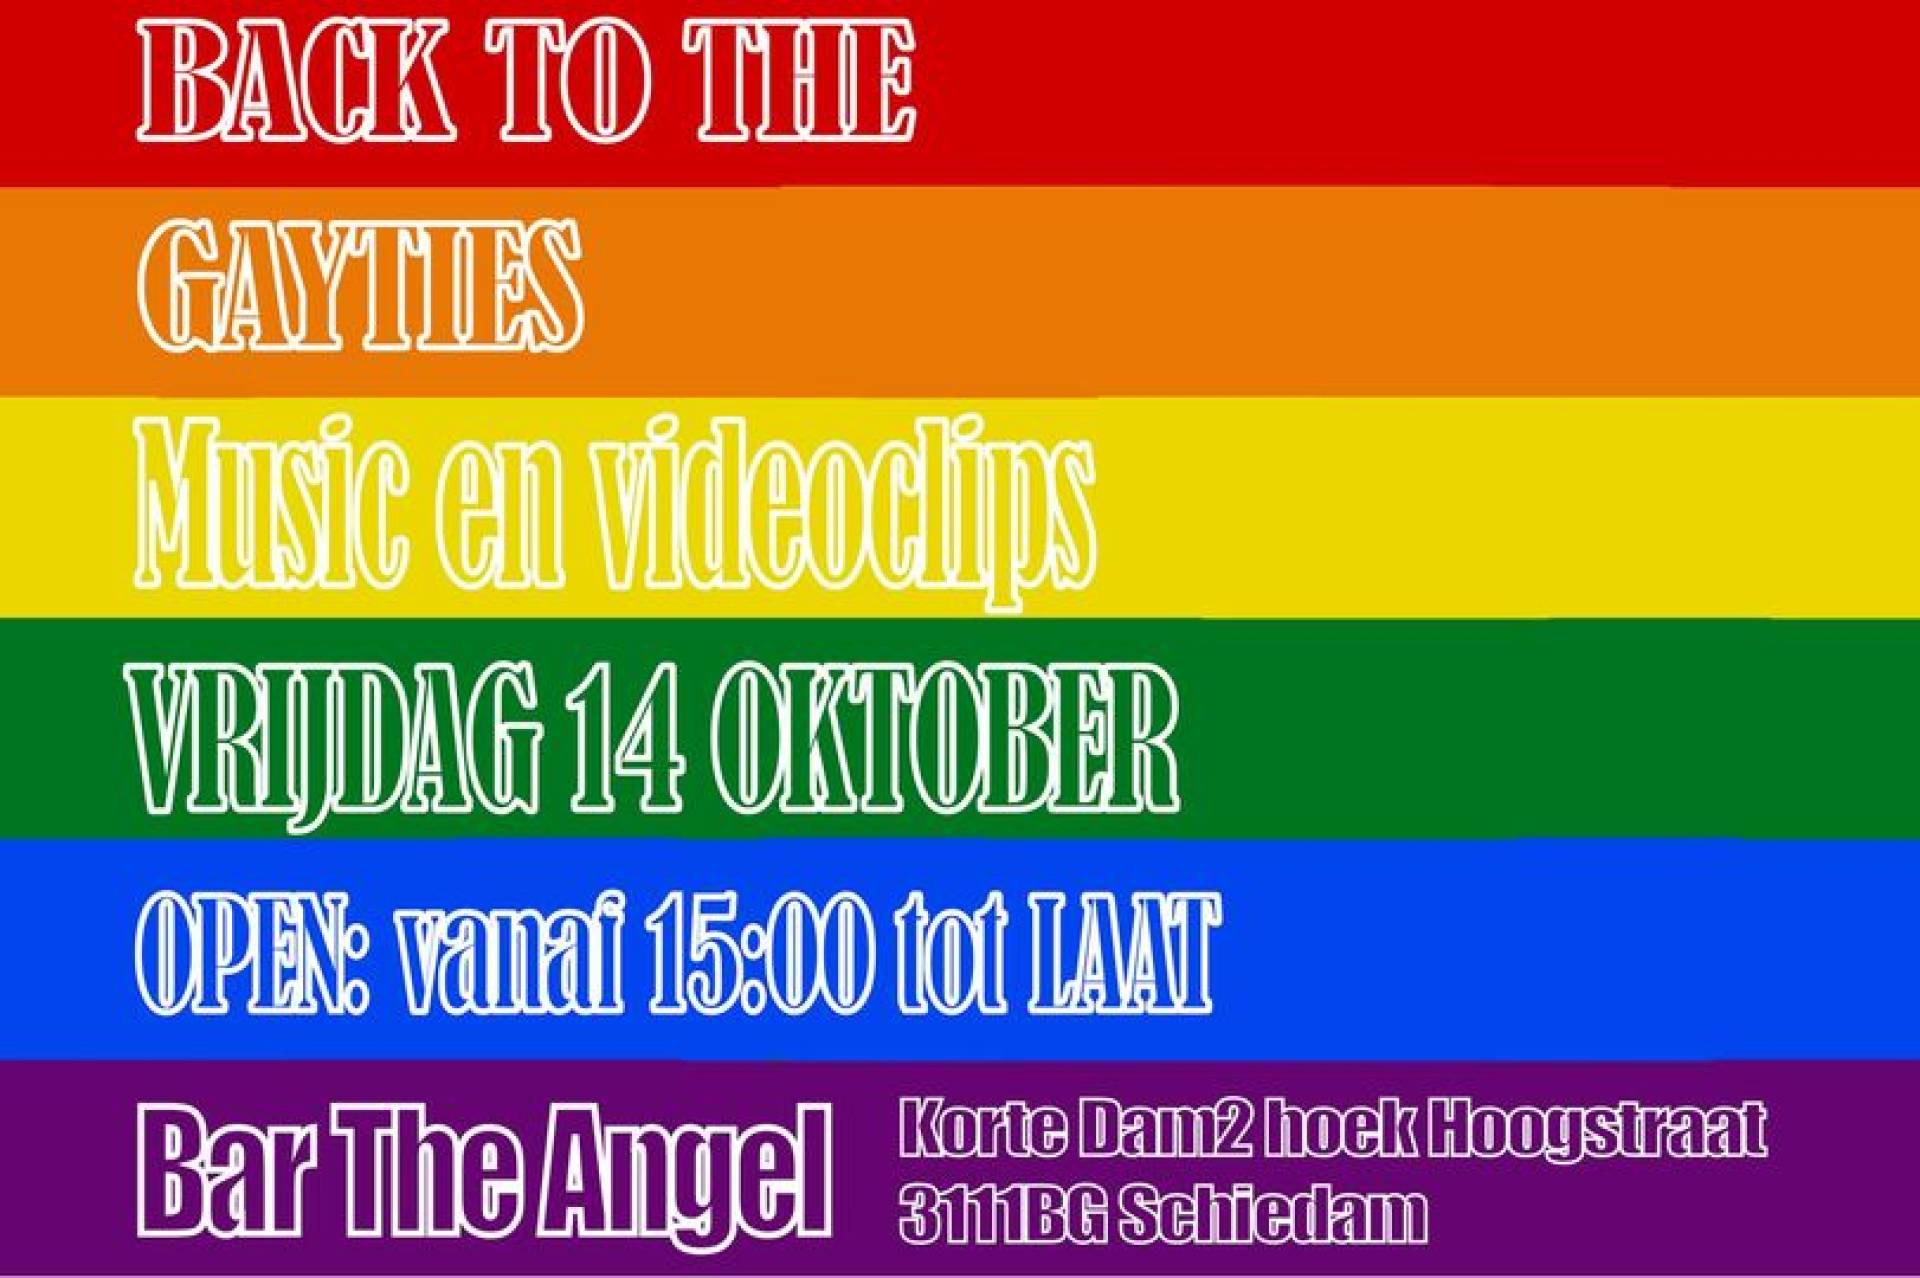 Regenboogweek Schiedam: back to the Gayties